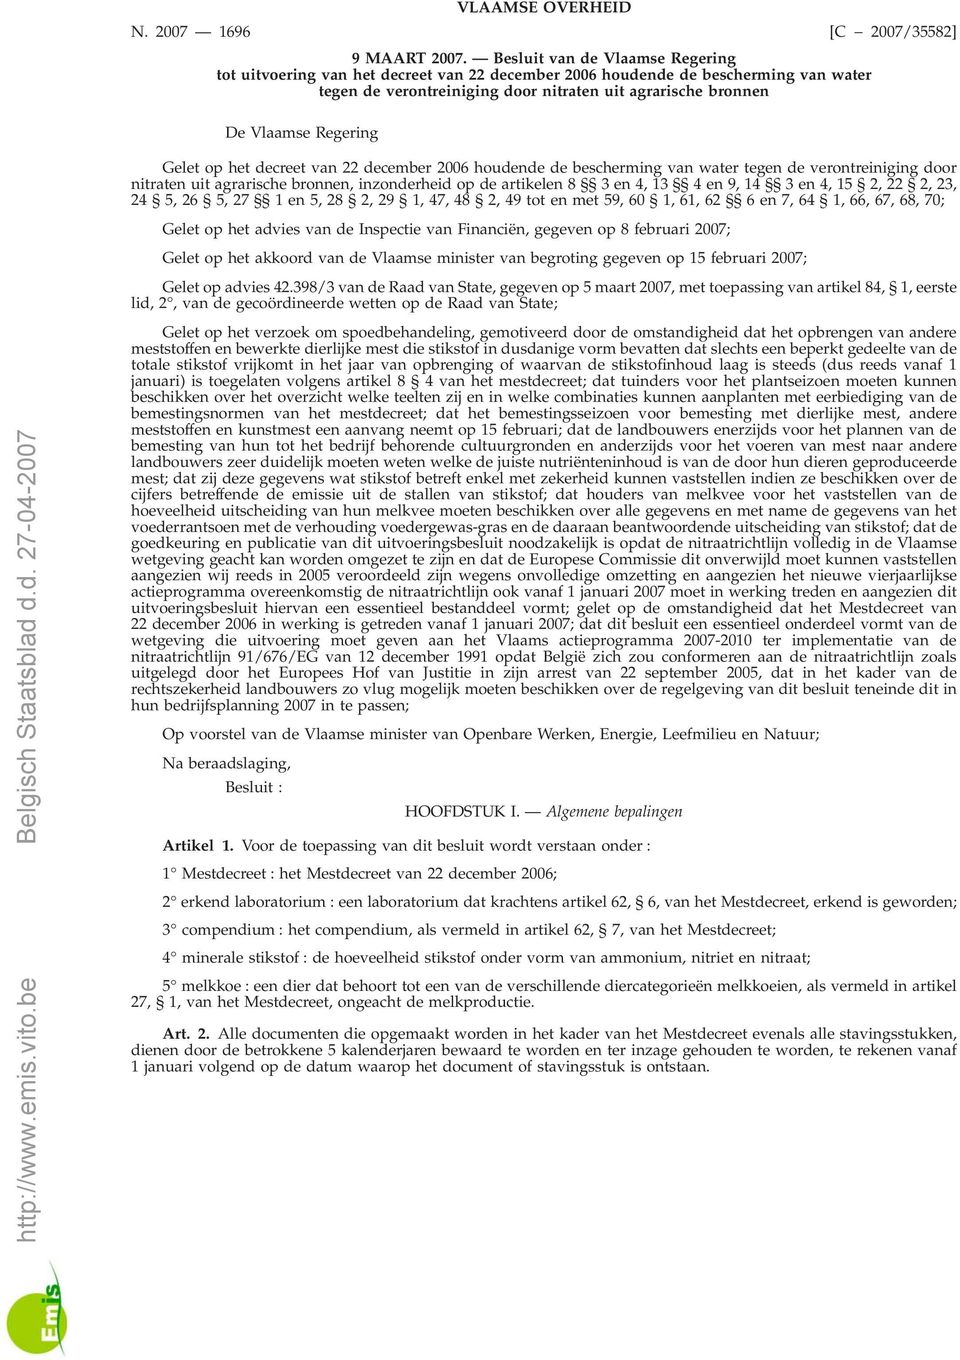 [C 2007/35582] Gelet op het decreet van 22 december 2006 houdende de bescherming van water tegen de verontreiniging door nitraten uit agrarische bronnen, inzonderheid op de artikelen 8 3en4,13